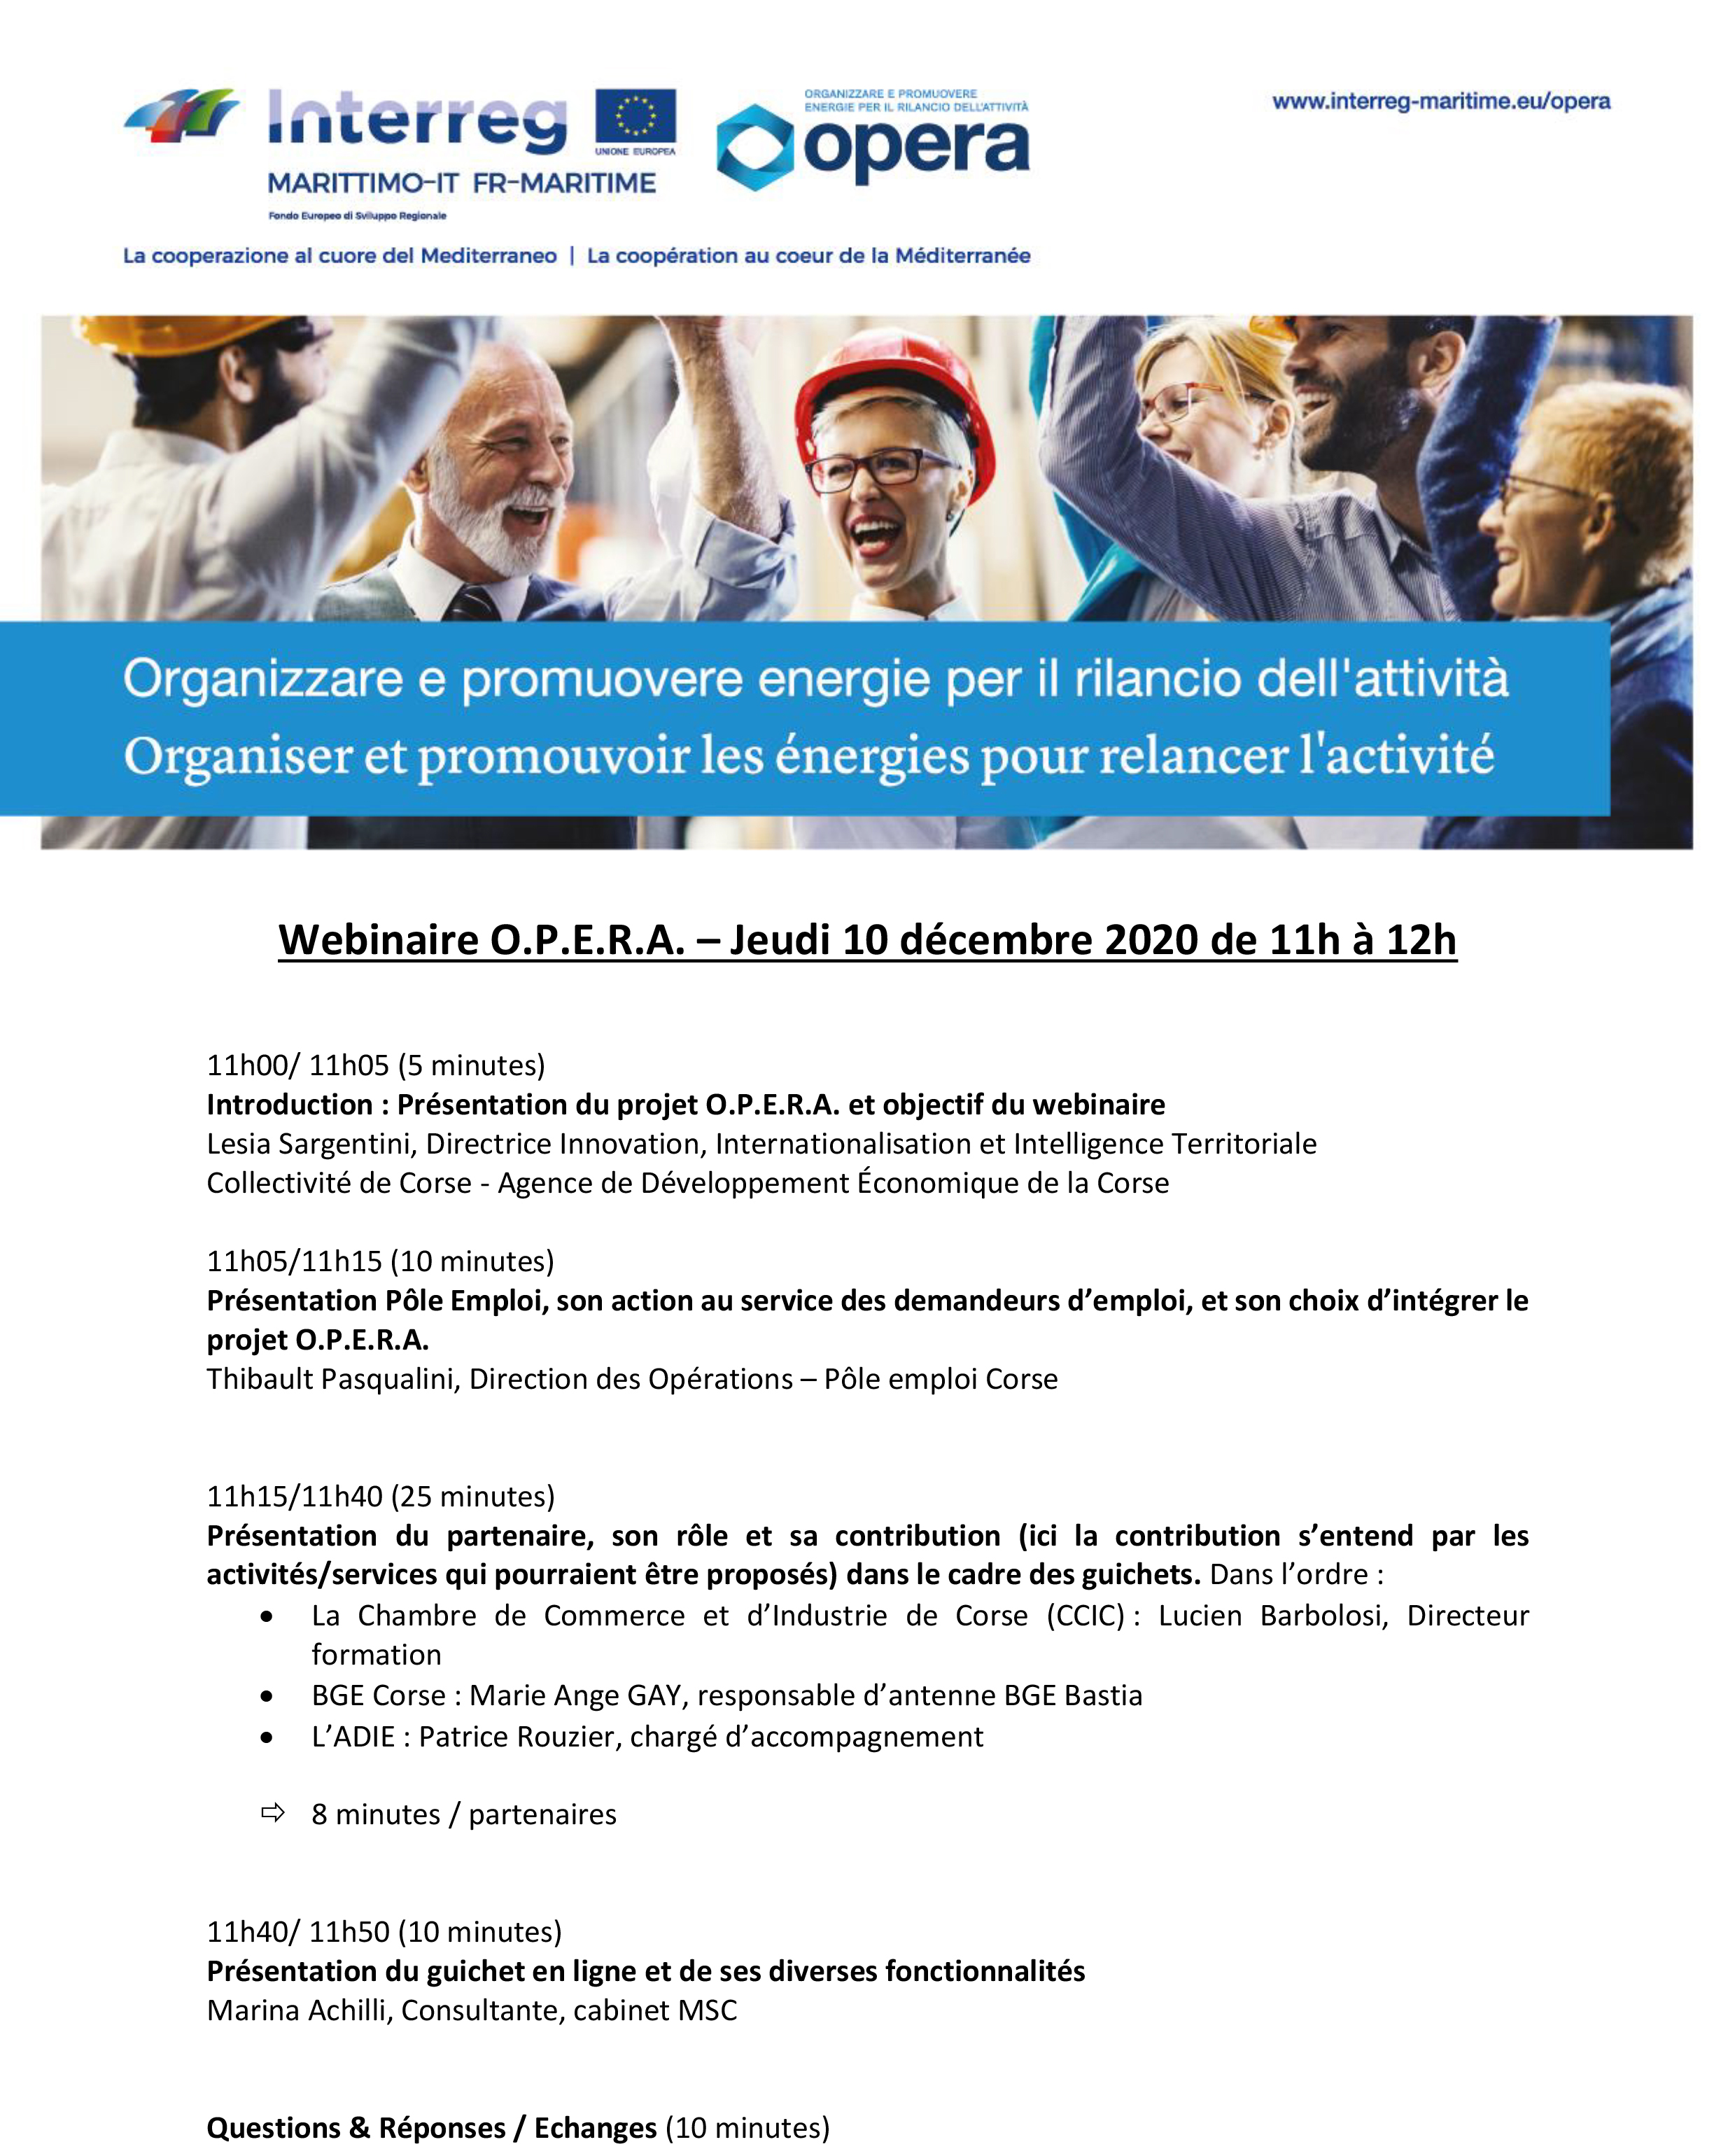 🔎Vous cherchez un emploi et souhaitez découvrir les services du guichet O.P.E.R.A.⏰Jeudi 1️⃣0️⃣ Décembre de 11h à 12h 👉Participez au webinaire organisé par l’ADEC en partenariat avec Pôle emploi Corse ✍️INSCRIPTION⬇️